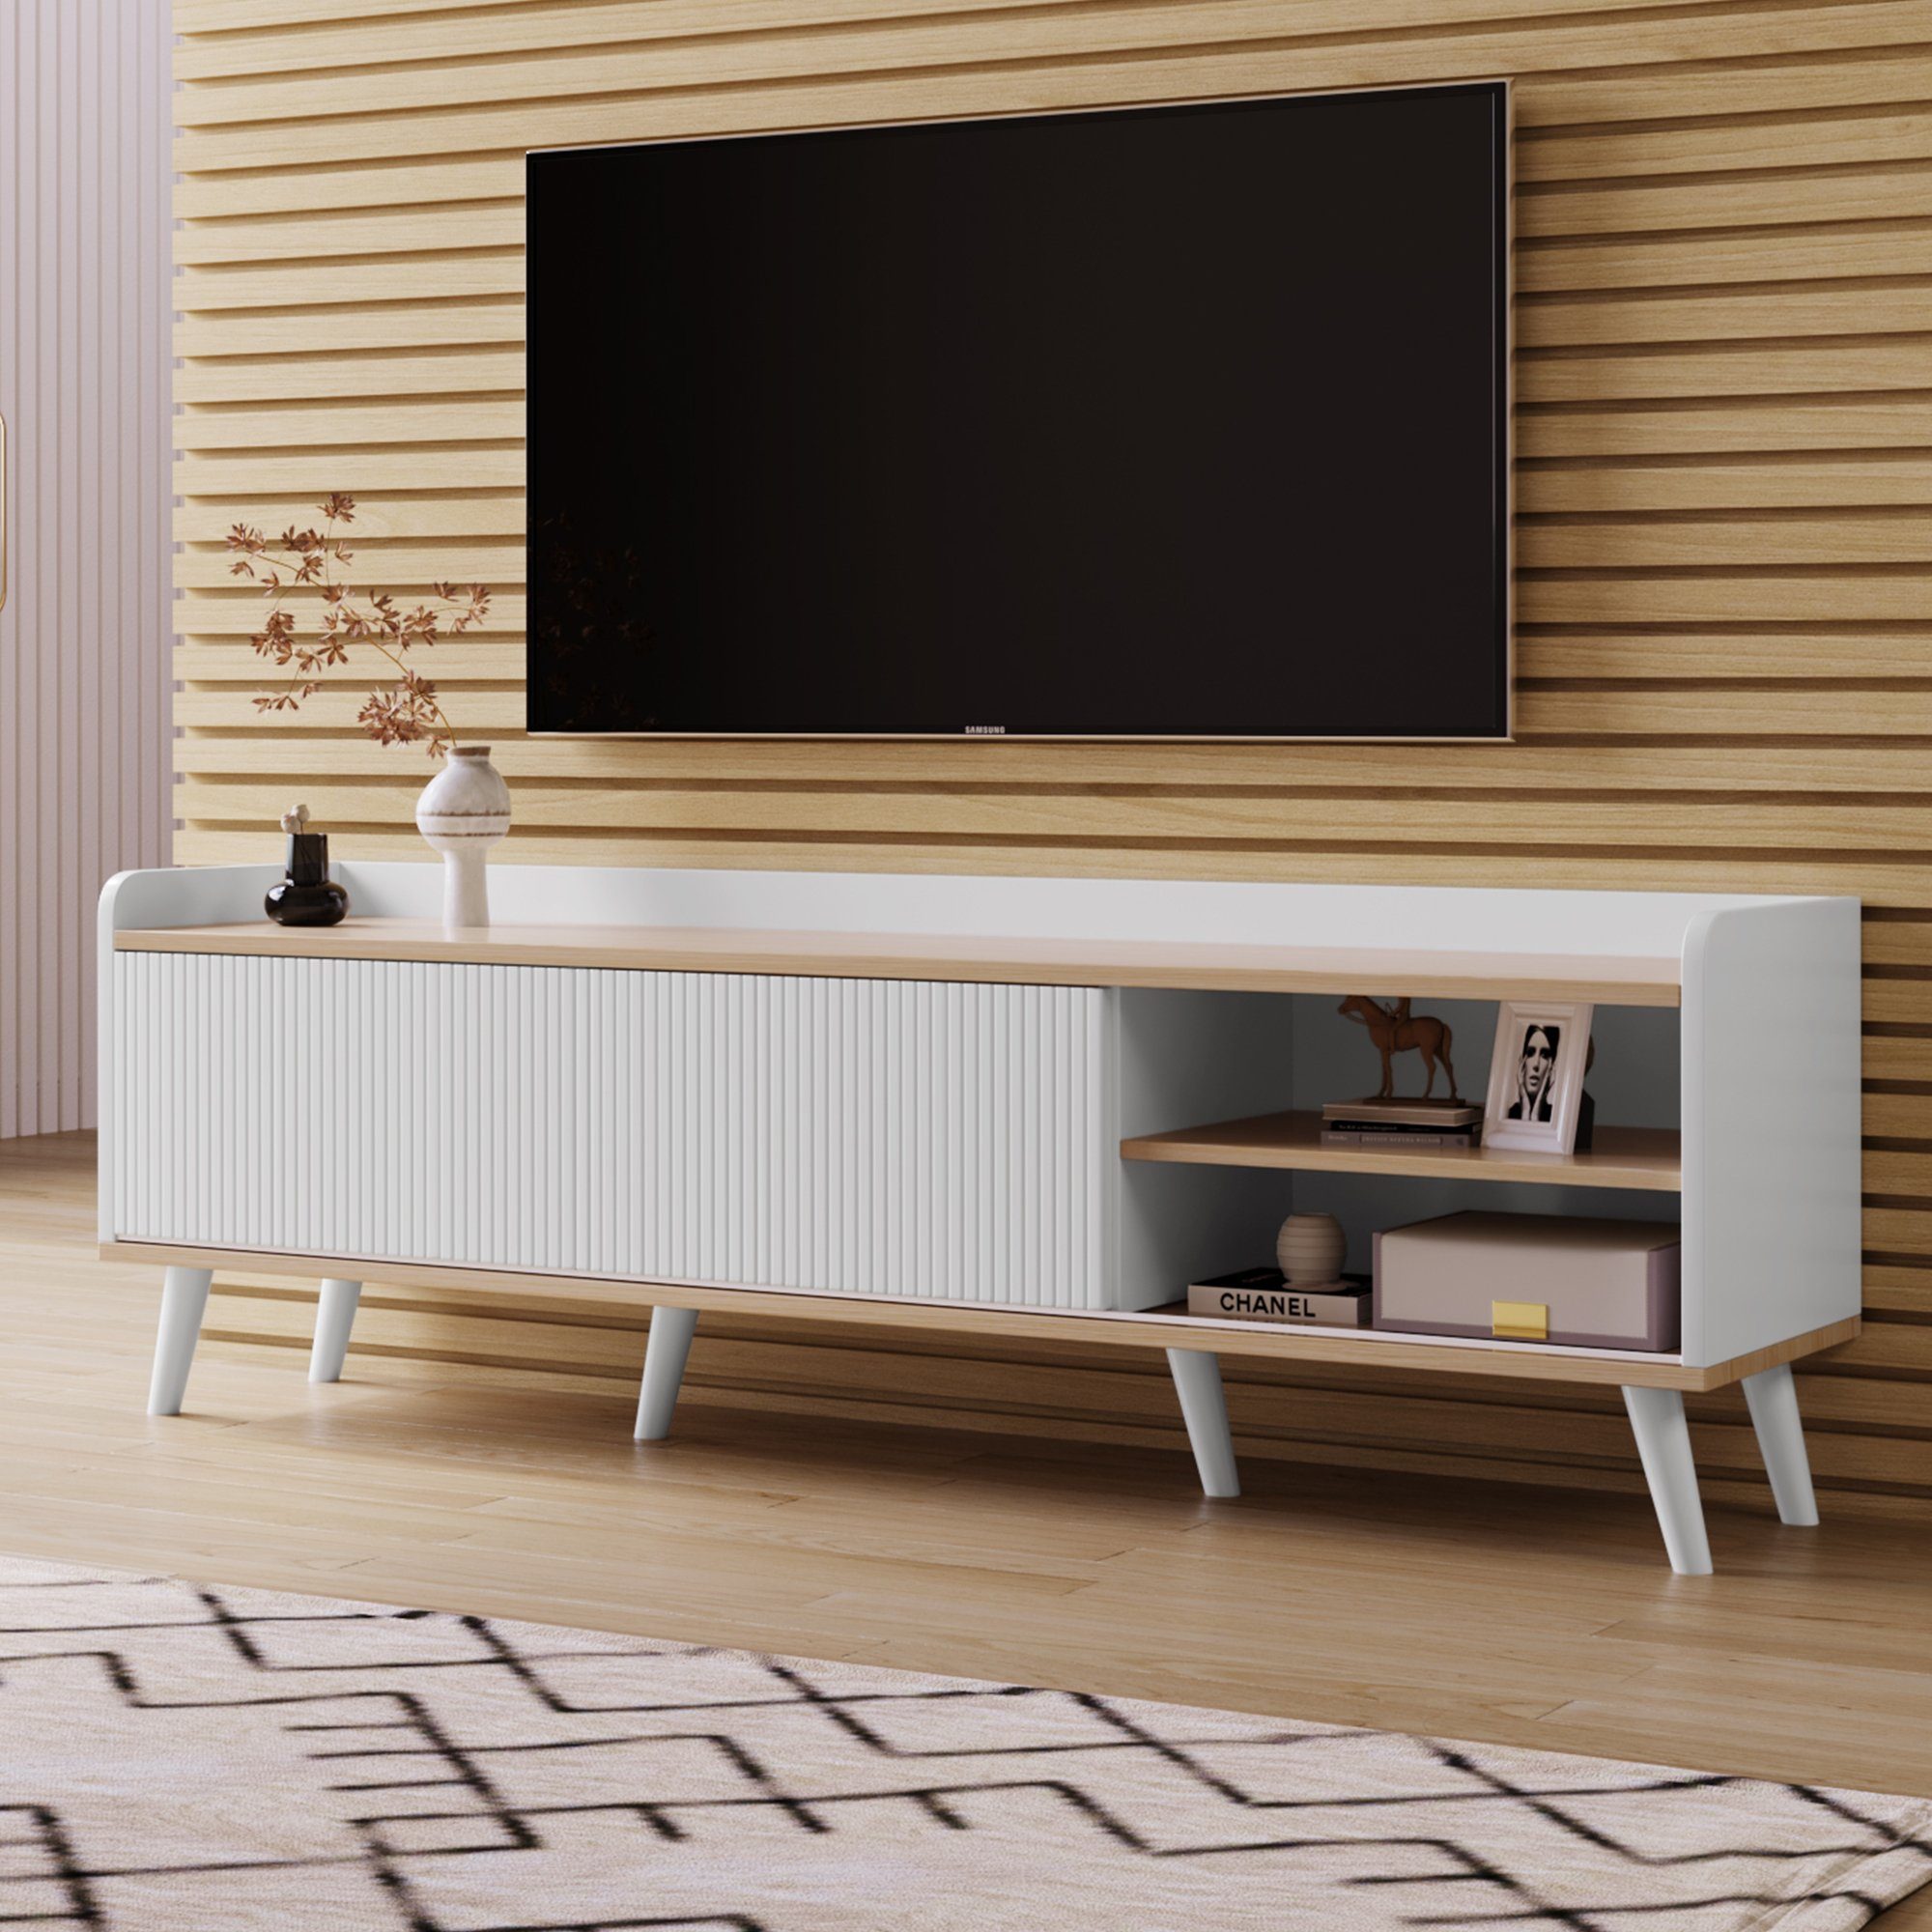 OKWISH TV-Schrank mit zwei passendes TV Schubladen, Fernsehtisch farblich Lowboard Spezielles Design cm) TV- Design, Multifunktionales Board (H58/L160/T40 Weiß